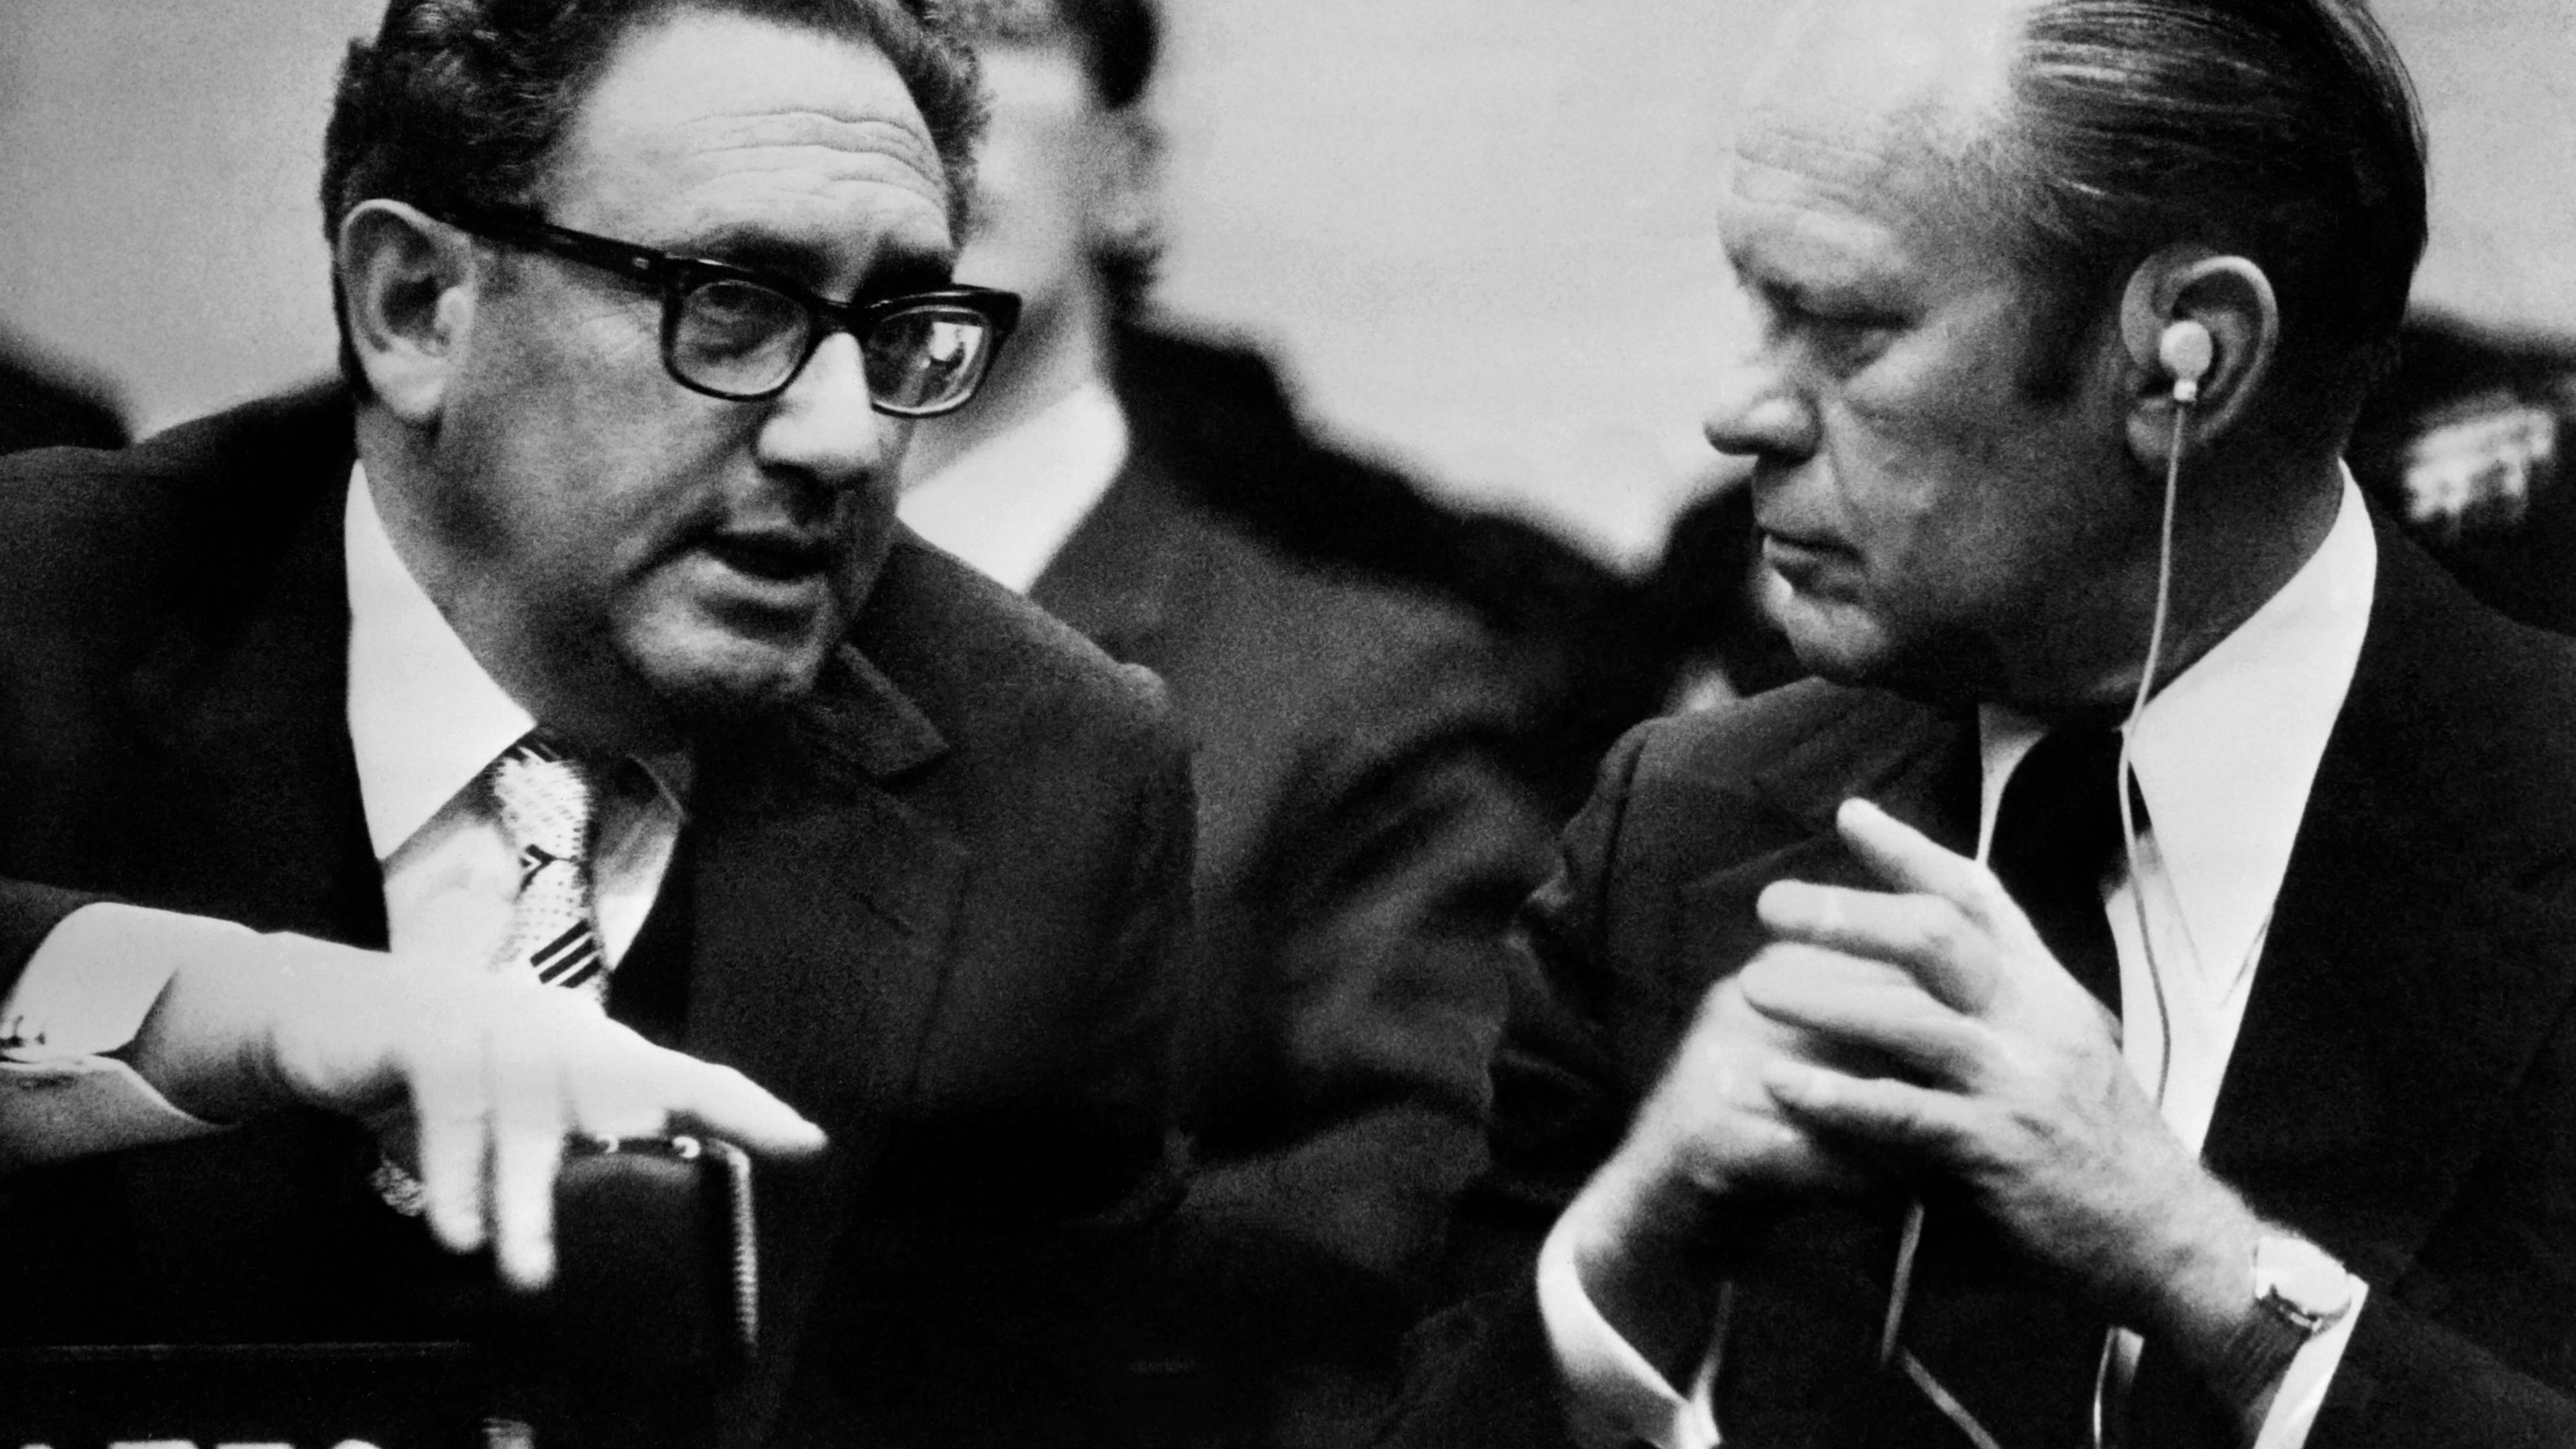 Henry Kissinger, US secretary of state in 1970s crises, dies at 100